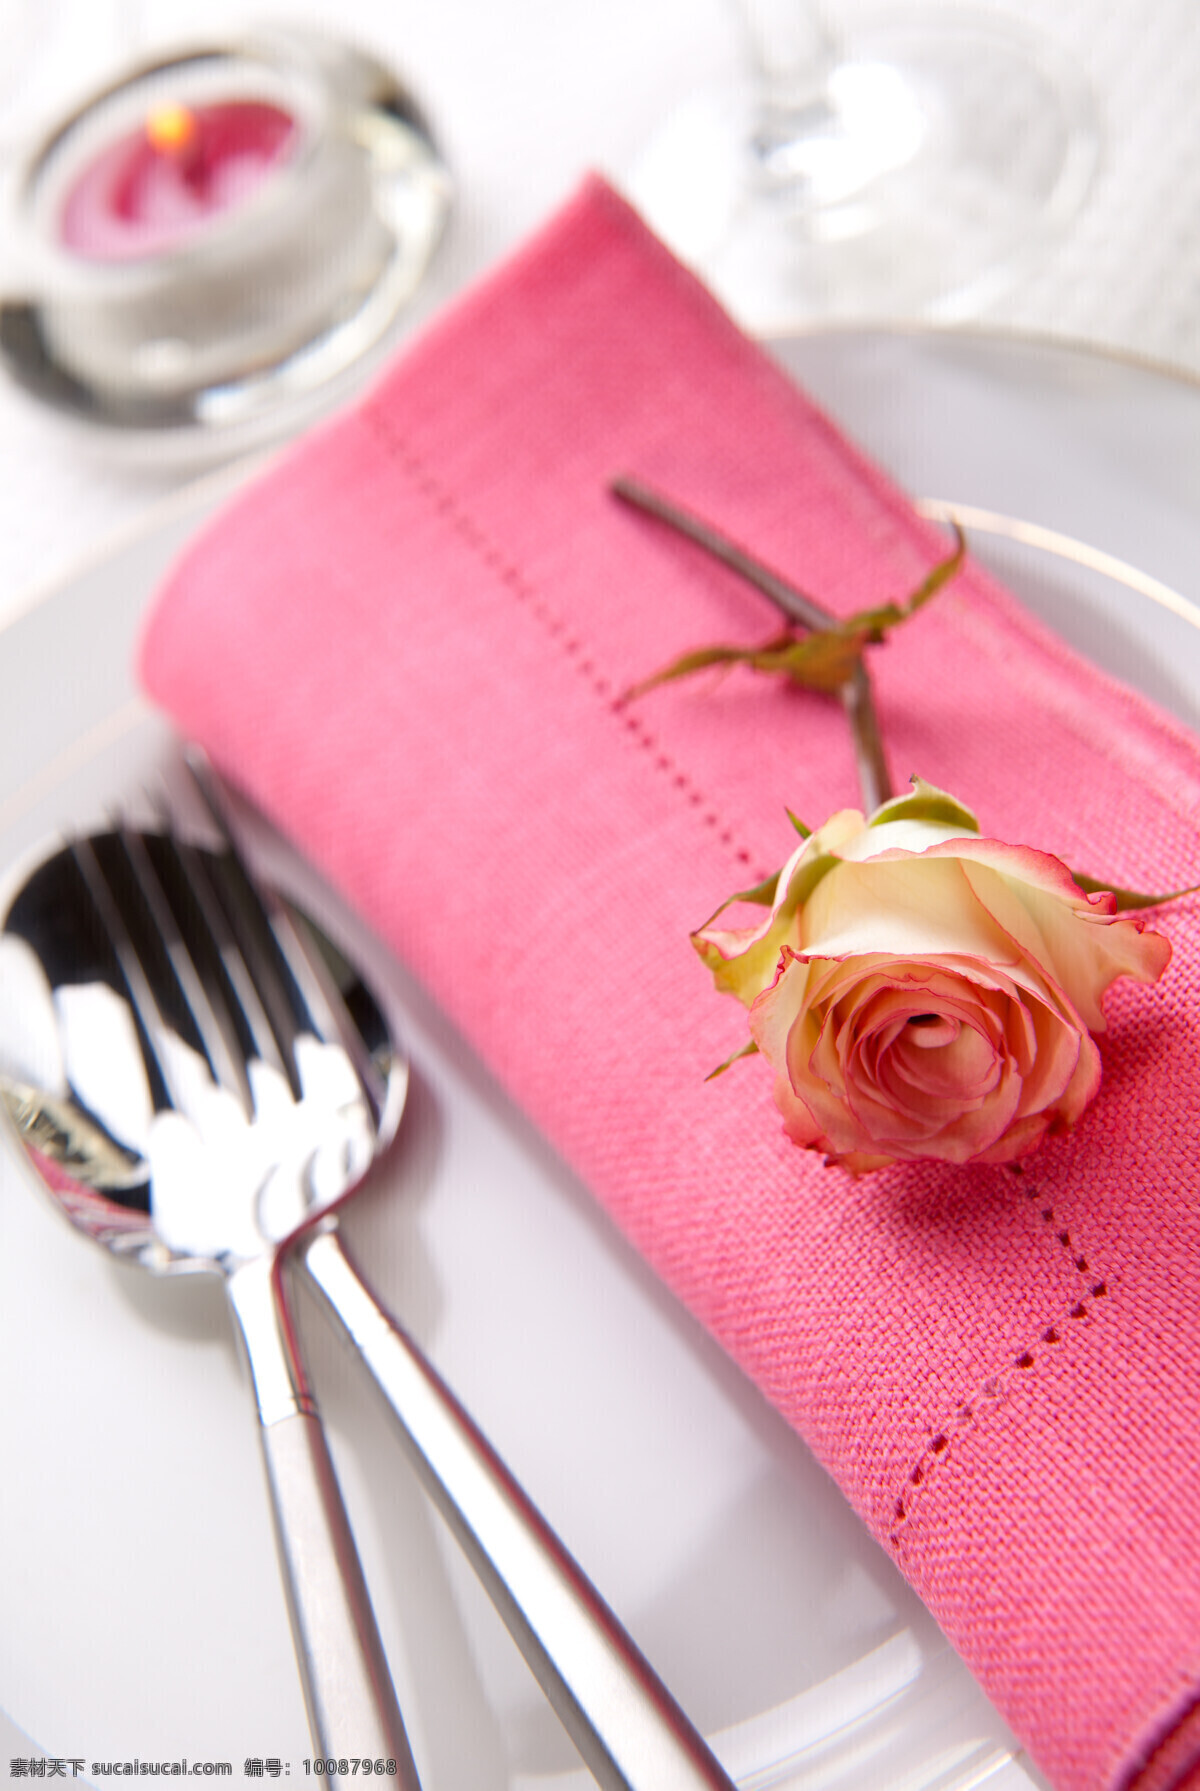 西餐餐具 高清餐具图片 刀叉 一支花朵 粉色花朵 餐具厨具 餐饮美食